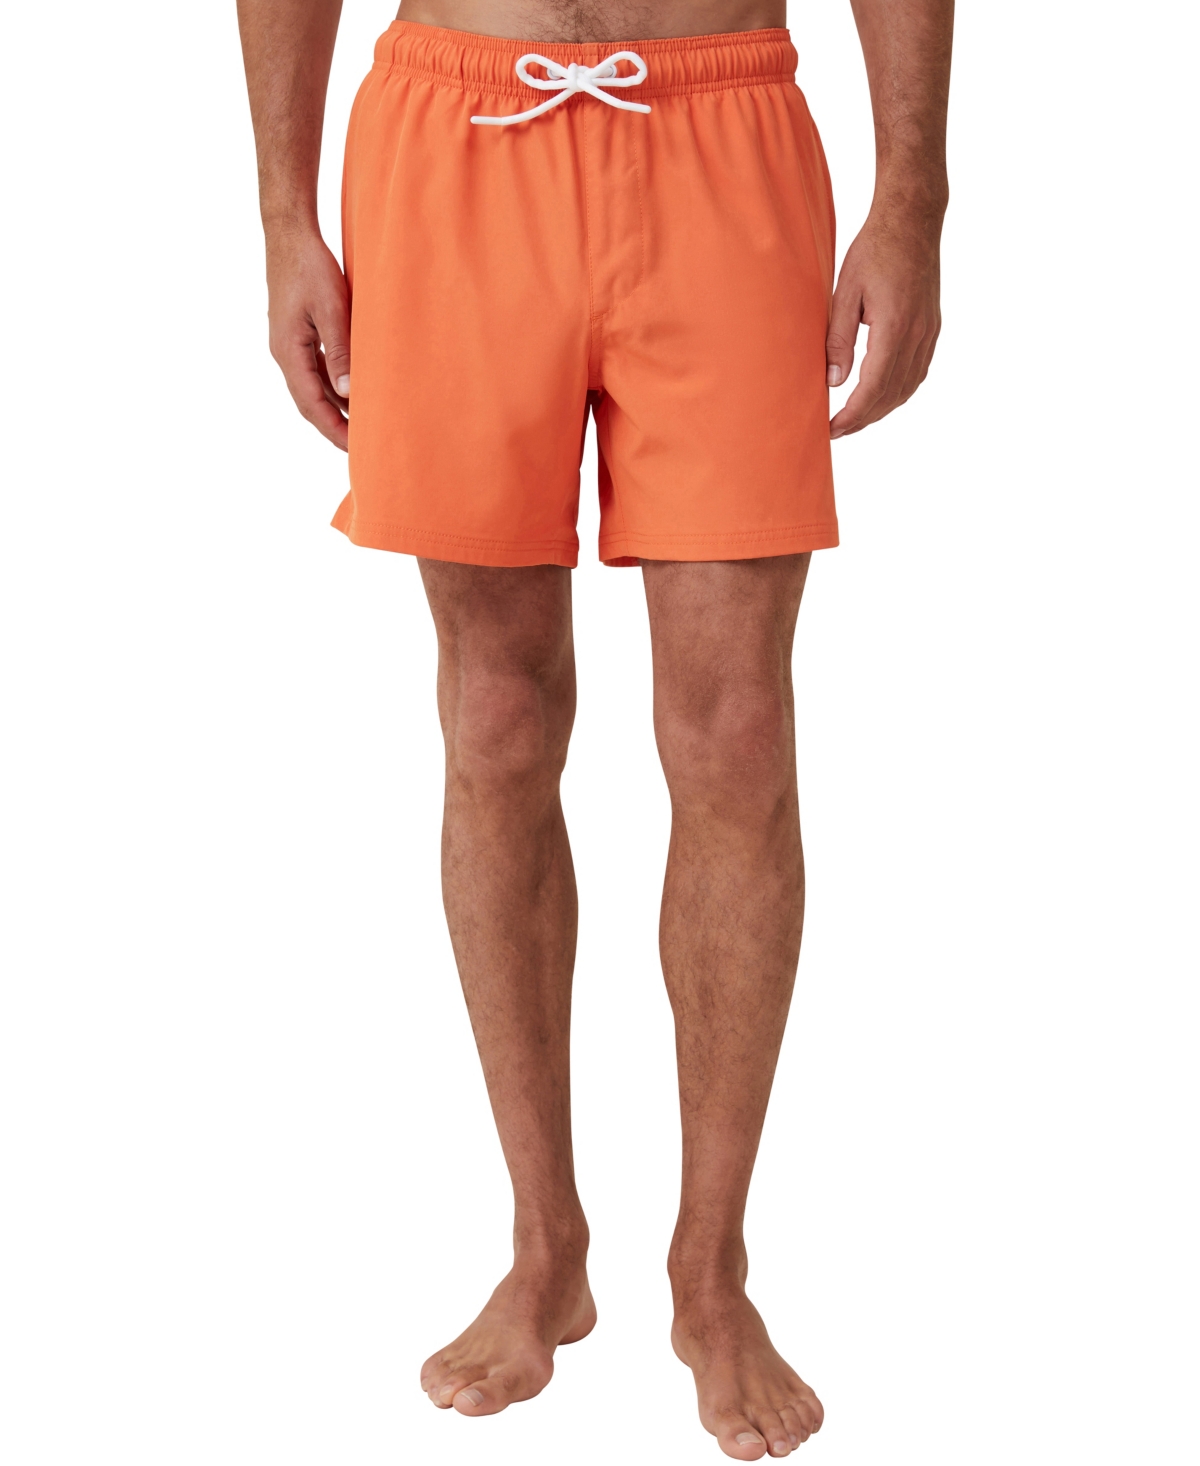 Men's Stretch Swim Short - Orange